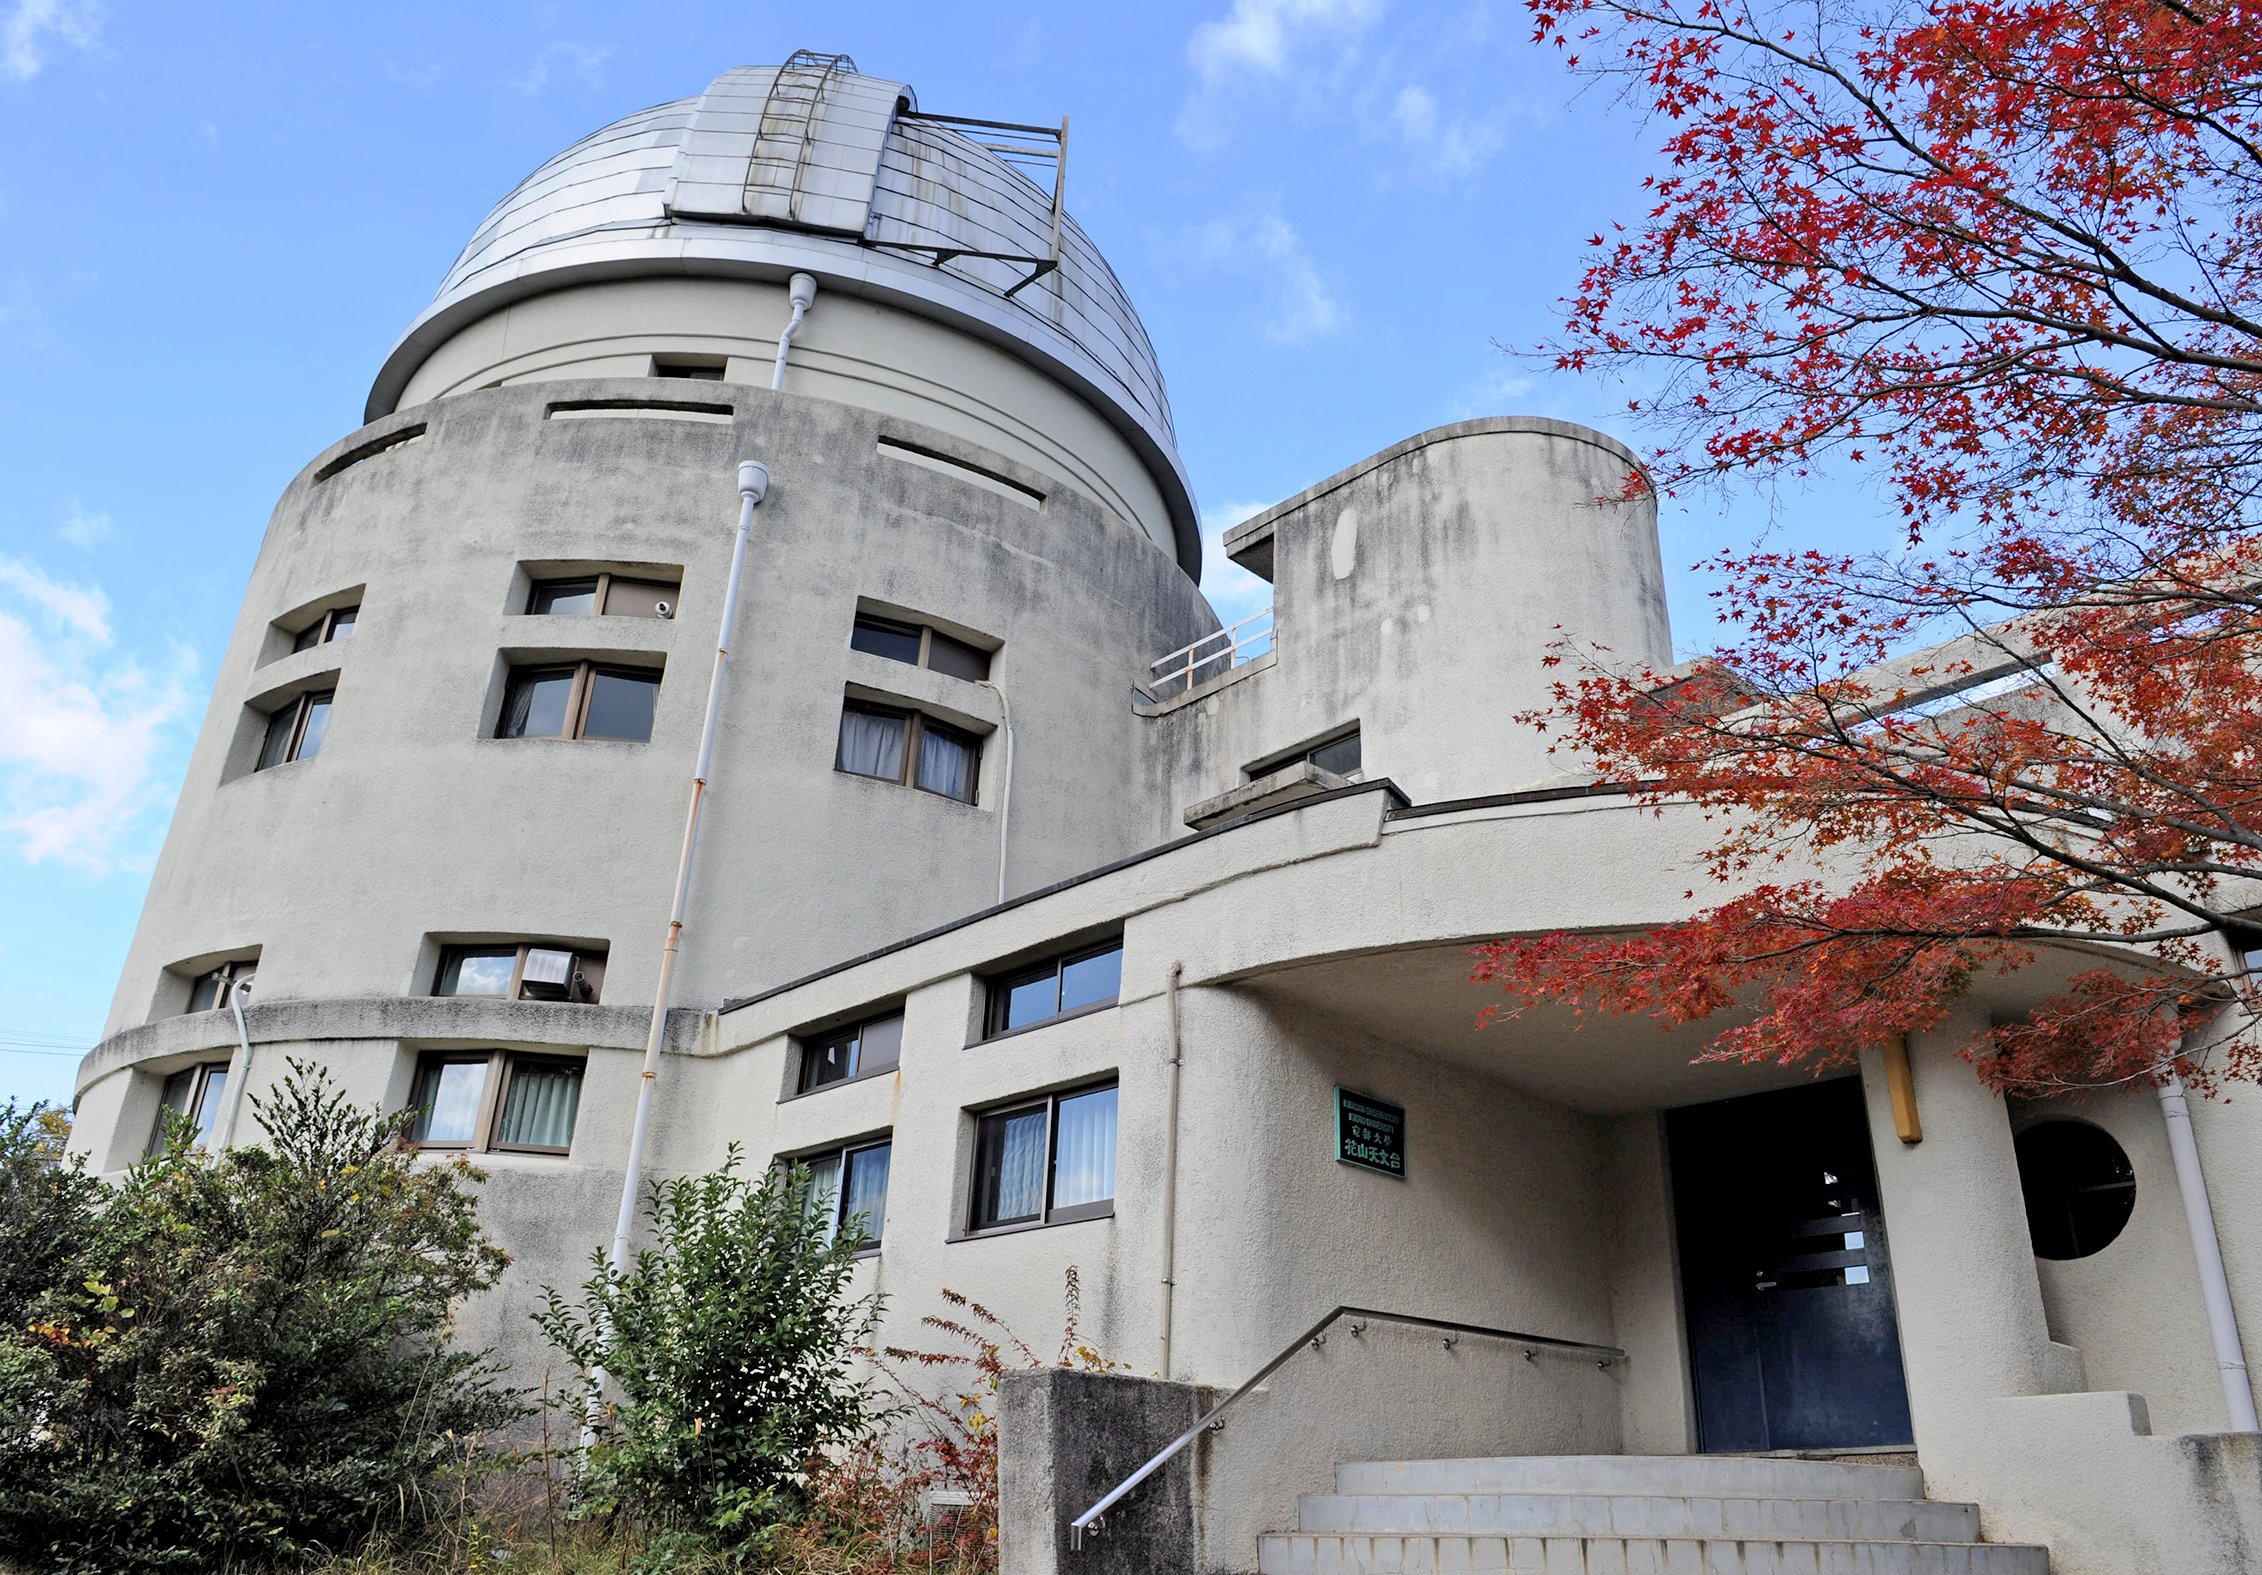 資金難の京大花山天文台、5月から一般公開へ　天文学発展に貢献も、存続危機